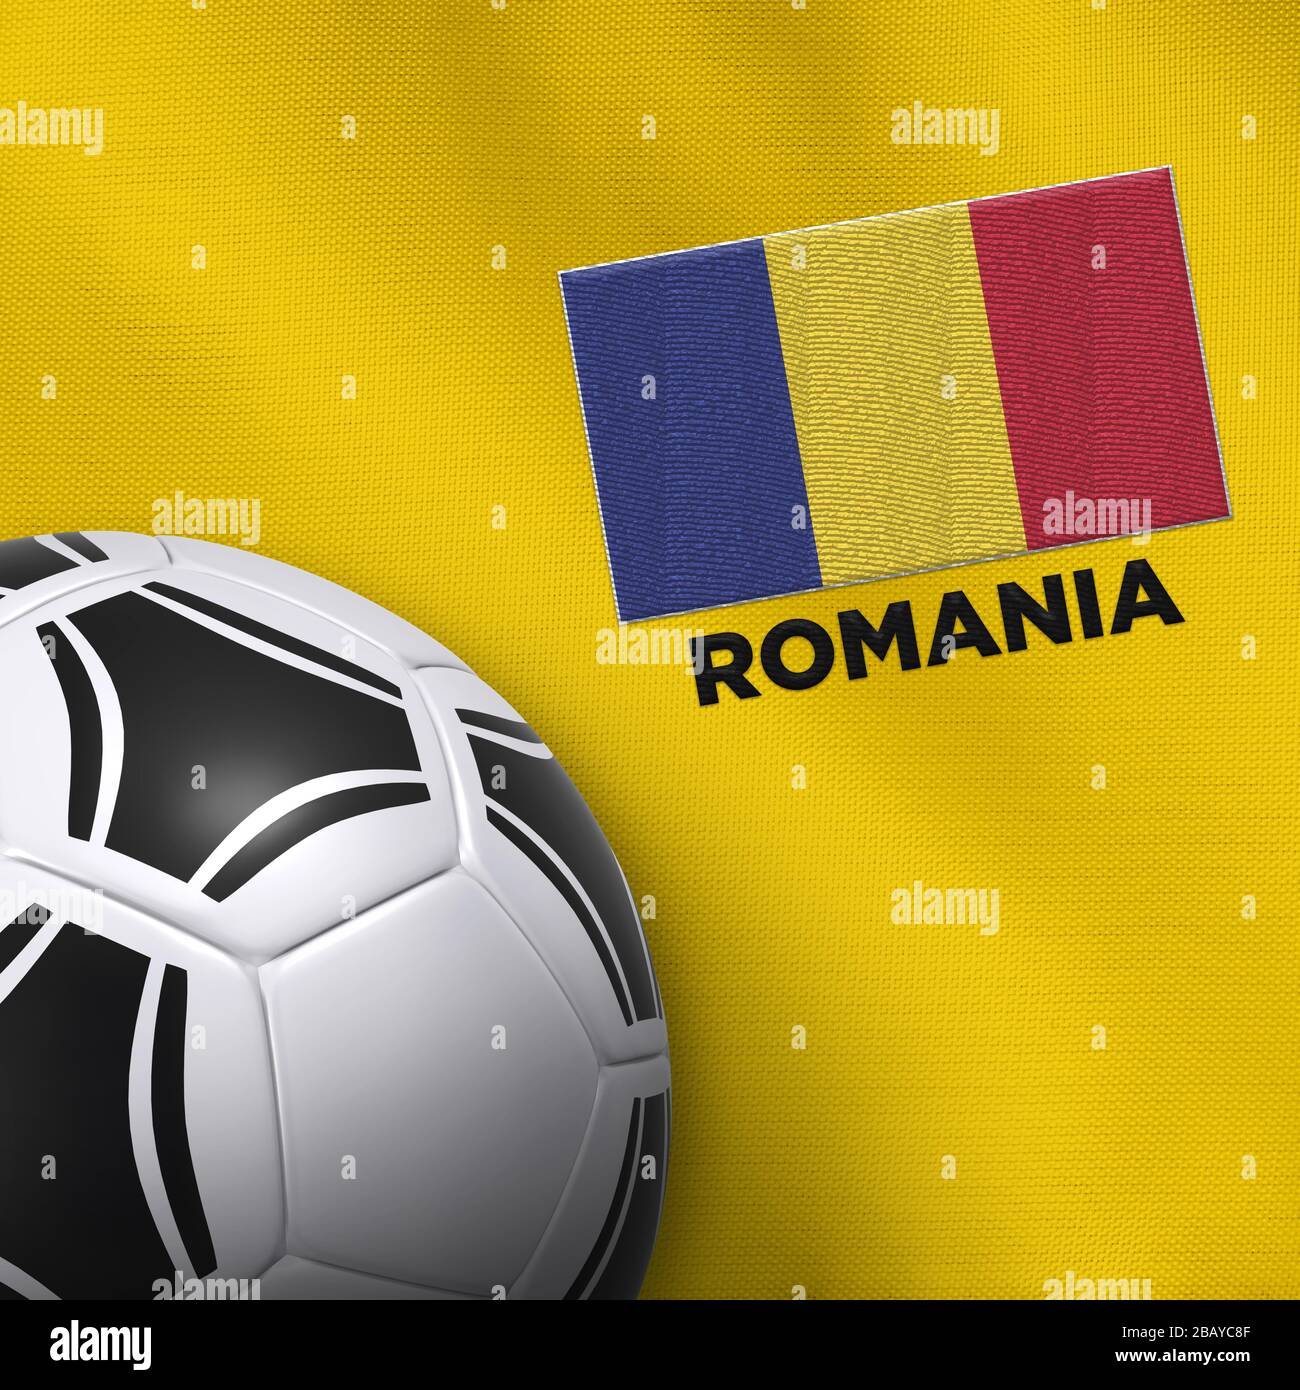 Fußball- und Nationalmannschaftstrikot von Rumänien. Stockfoto